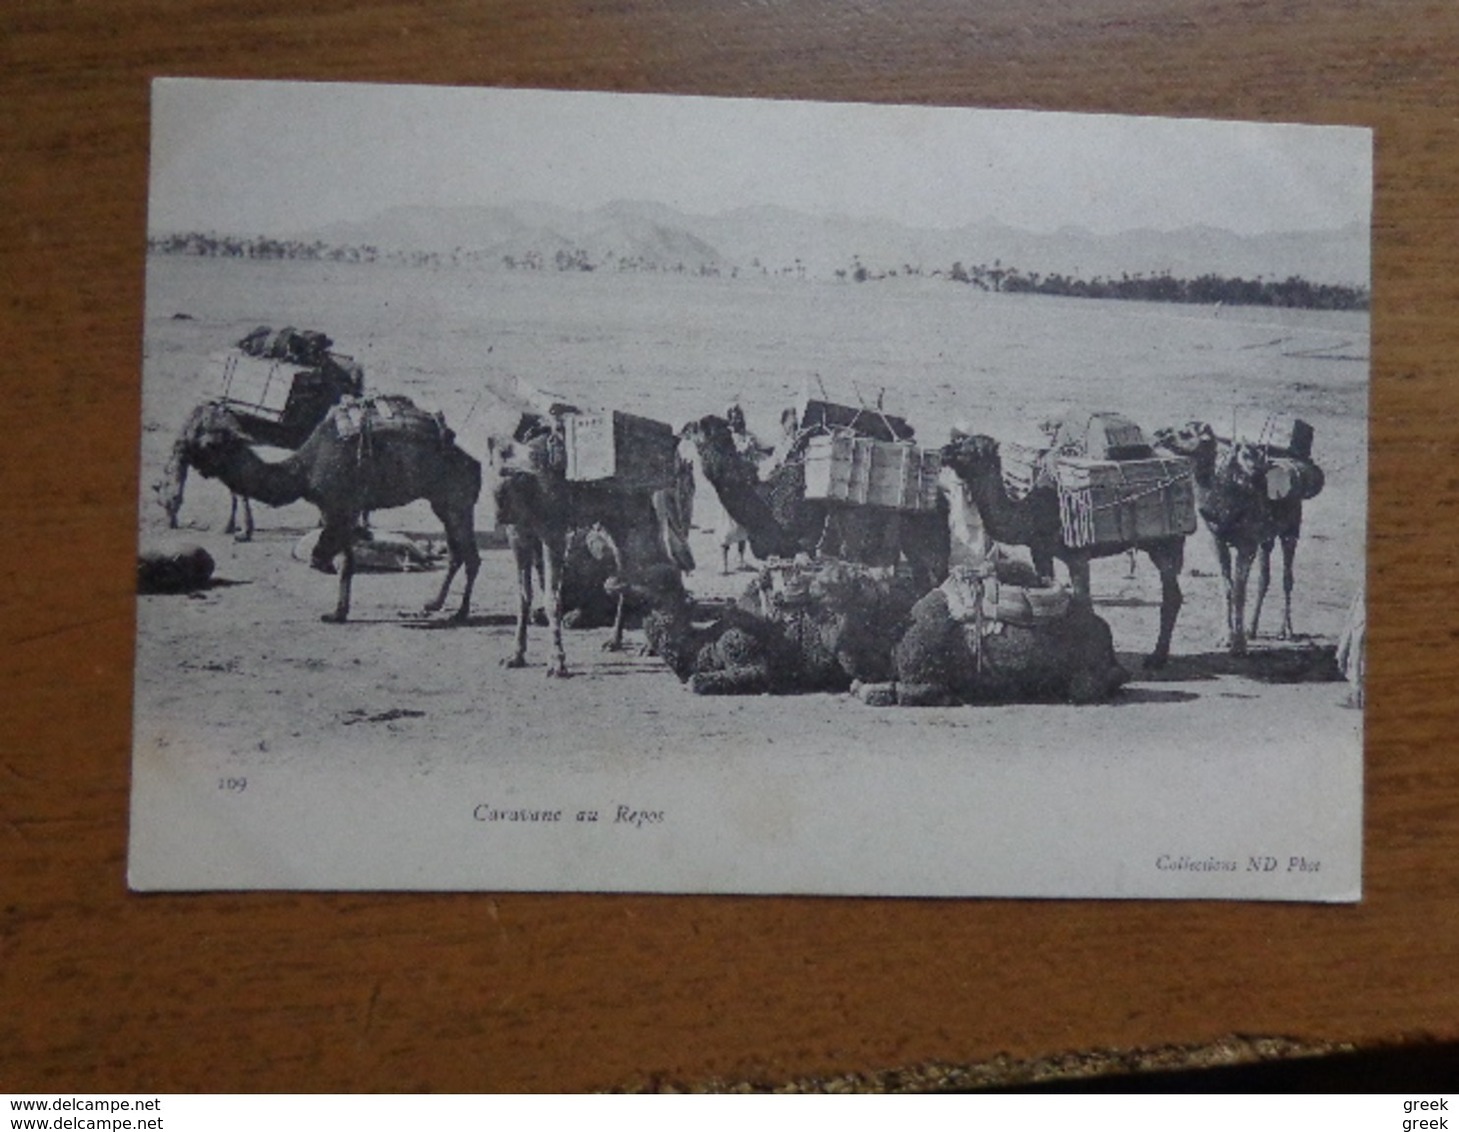 27 oude kaartjes met KAMELEN - CAMELS (zie foto's)